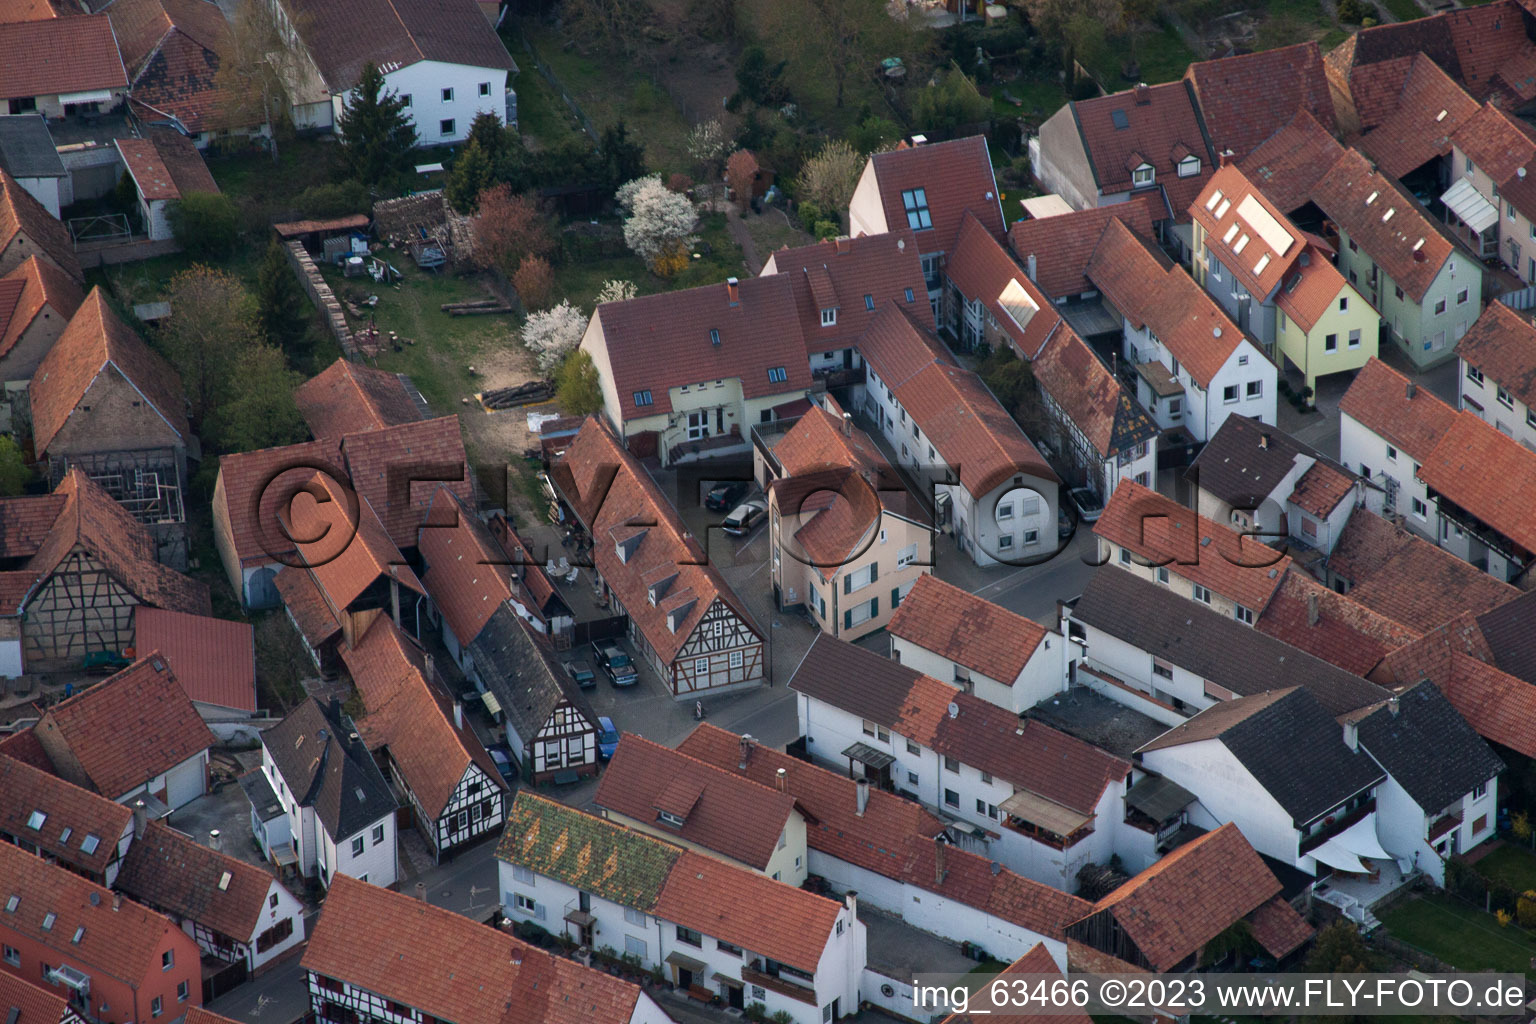 Vue oblique de Jockgrim dans le département Rhénanie-Palatinat, Allemagne